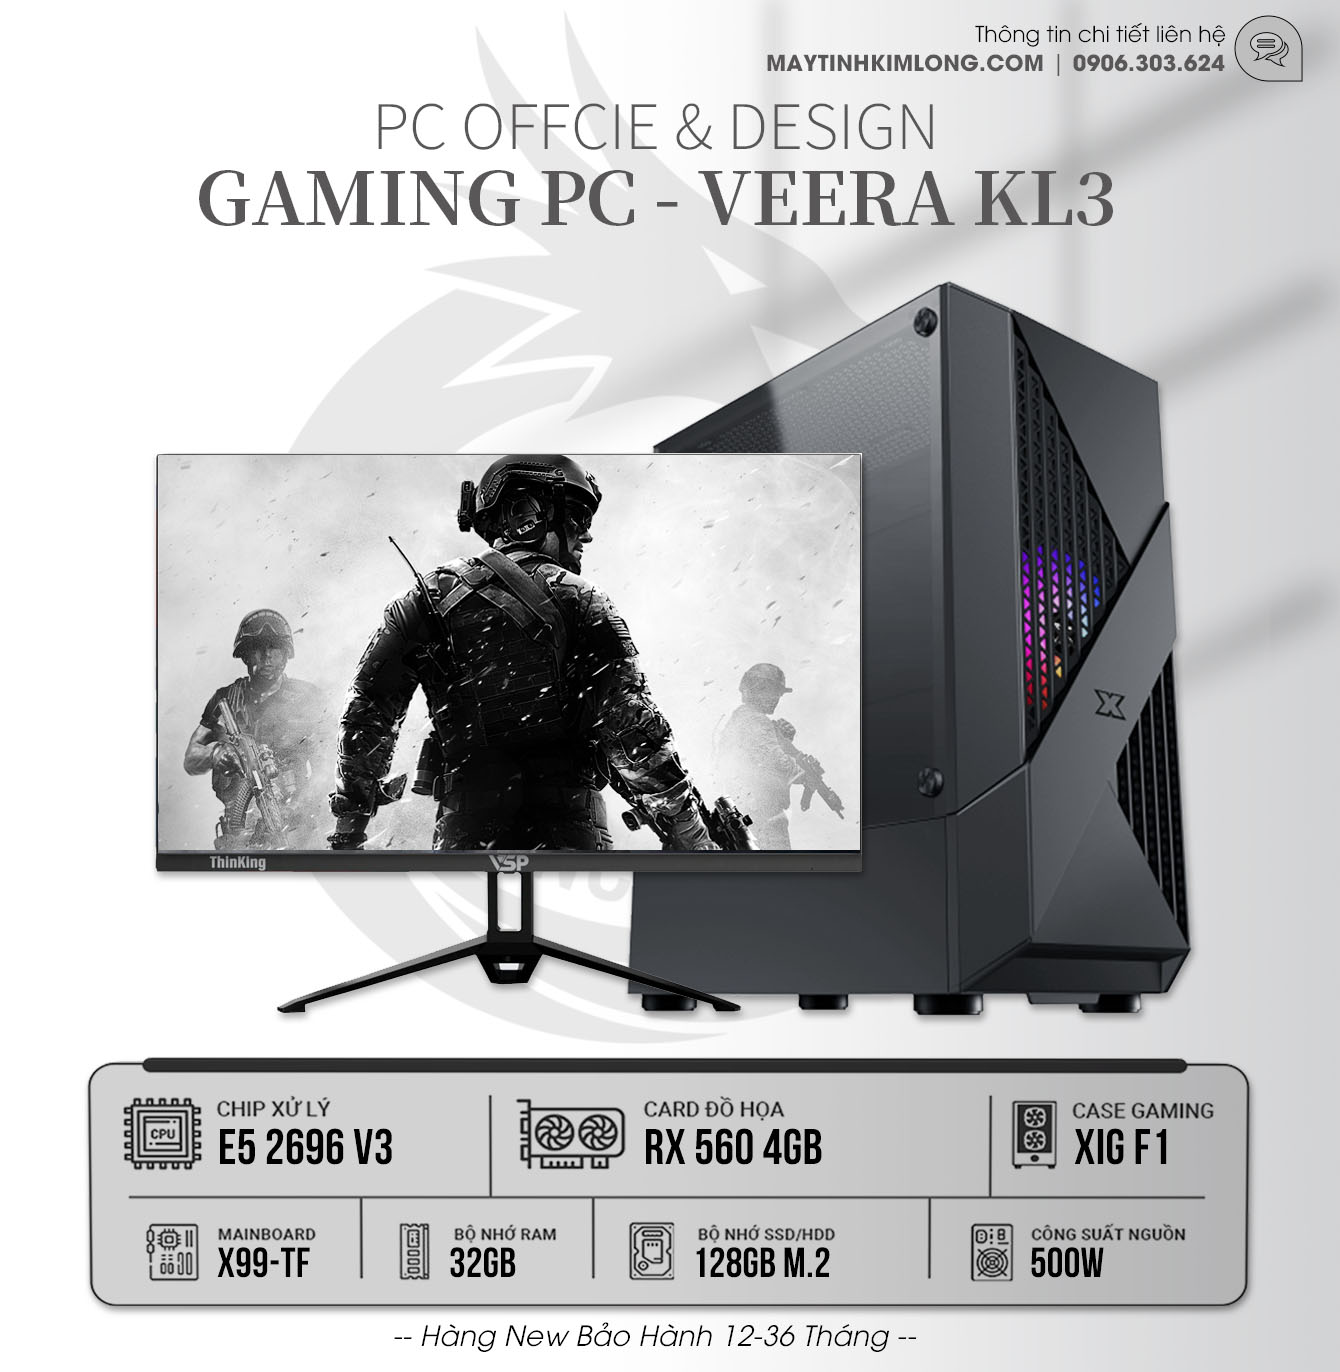 PC Gaming KL3: Xeon E5 2696v3/32G/RX560 4GB/SSD120GB/500W